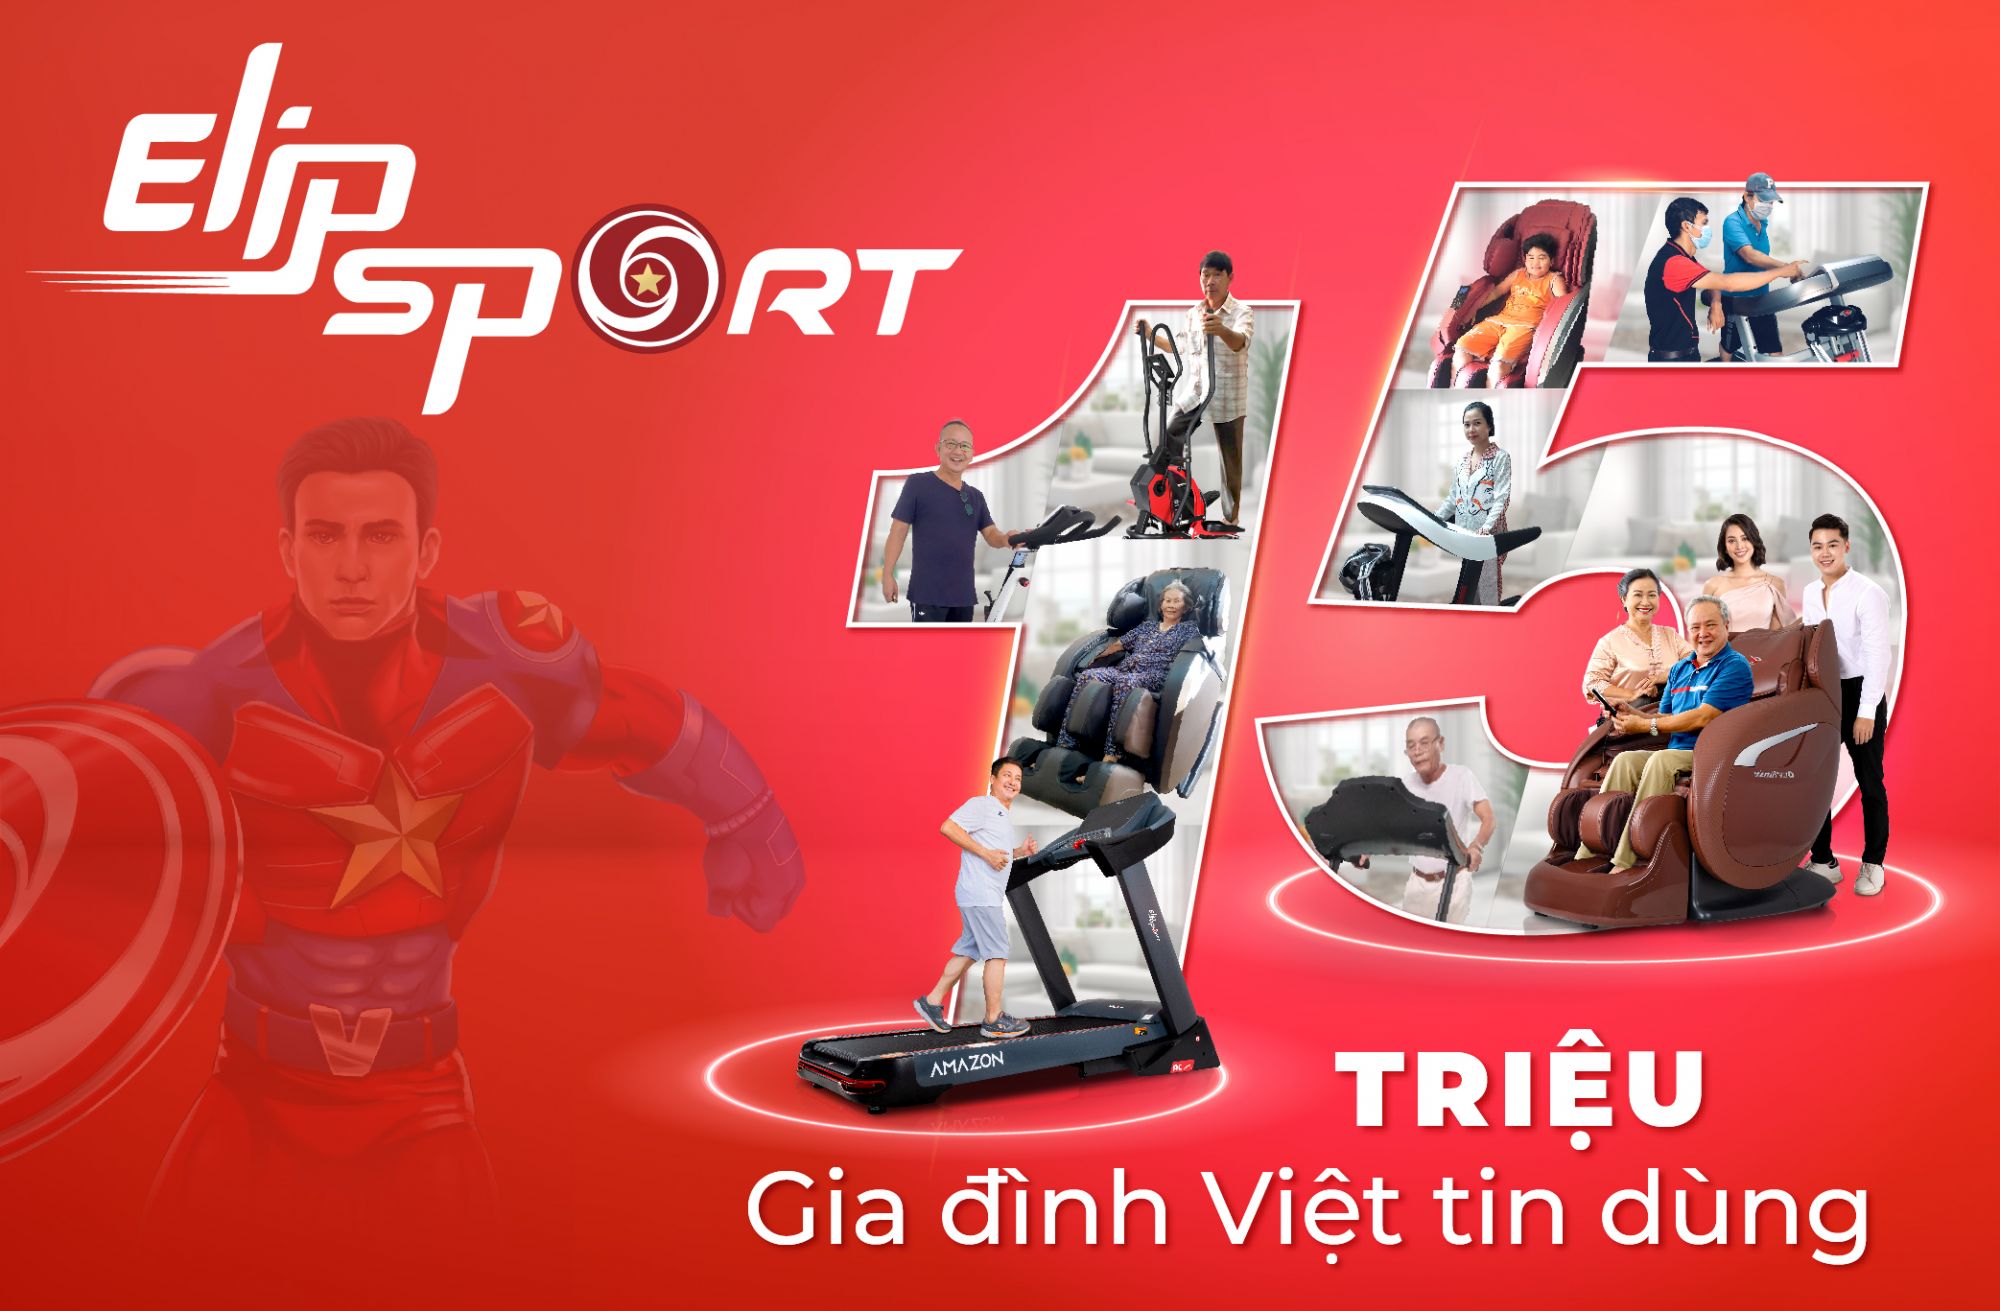 Elipsport: Thương hiệu 15 năm uy tín, 15 triệu người Việt tin dùng - ảnh 4